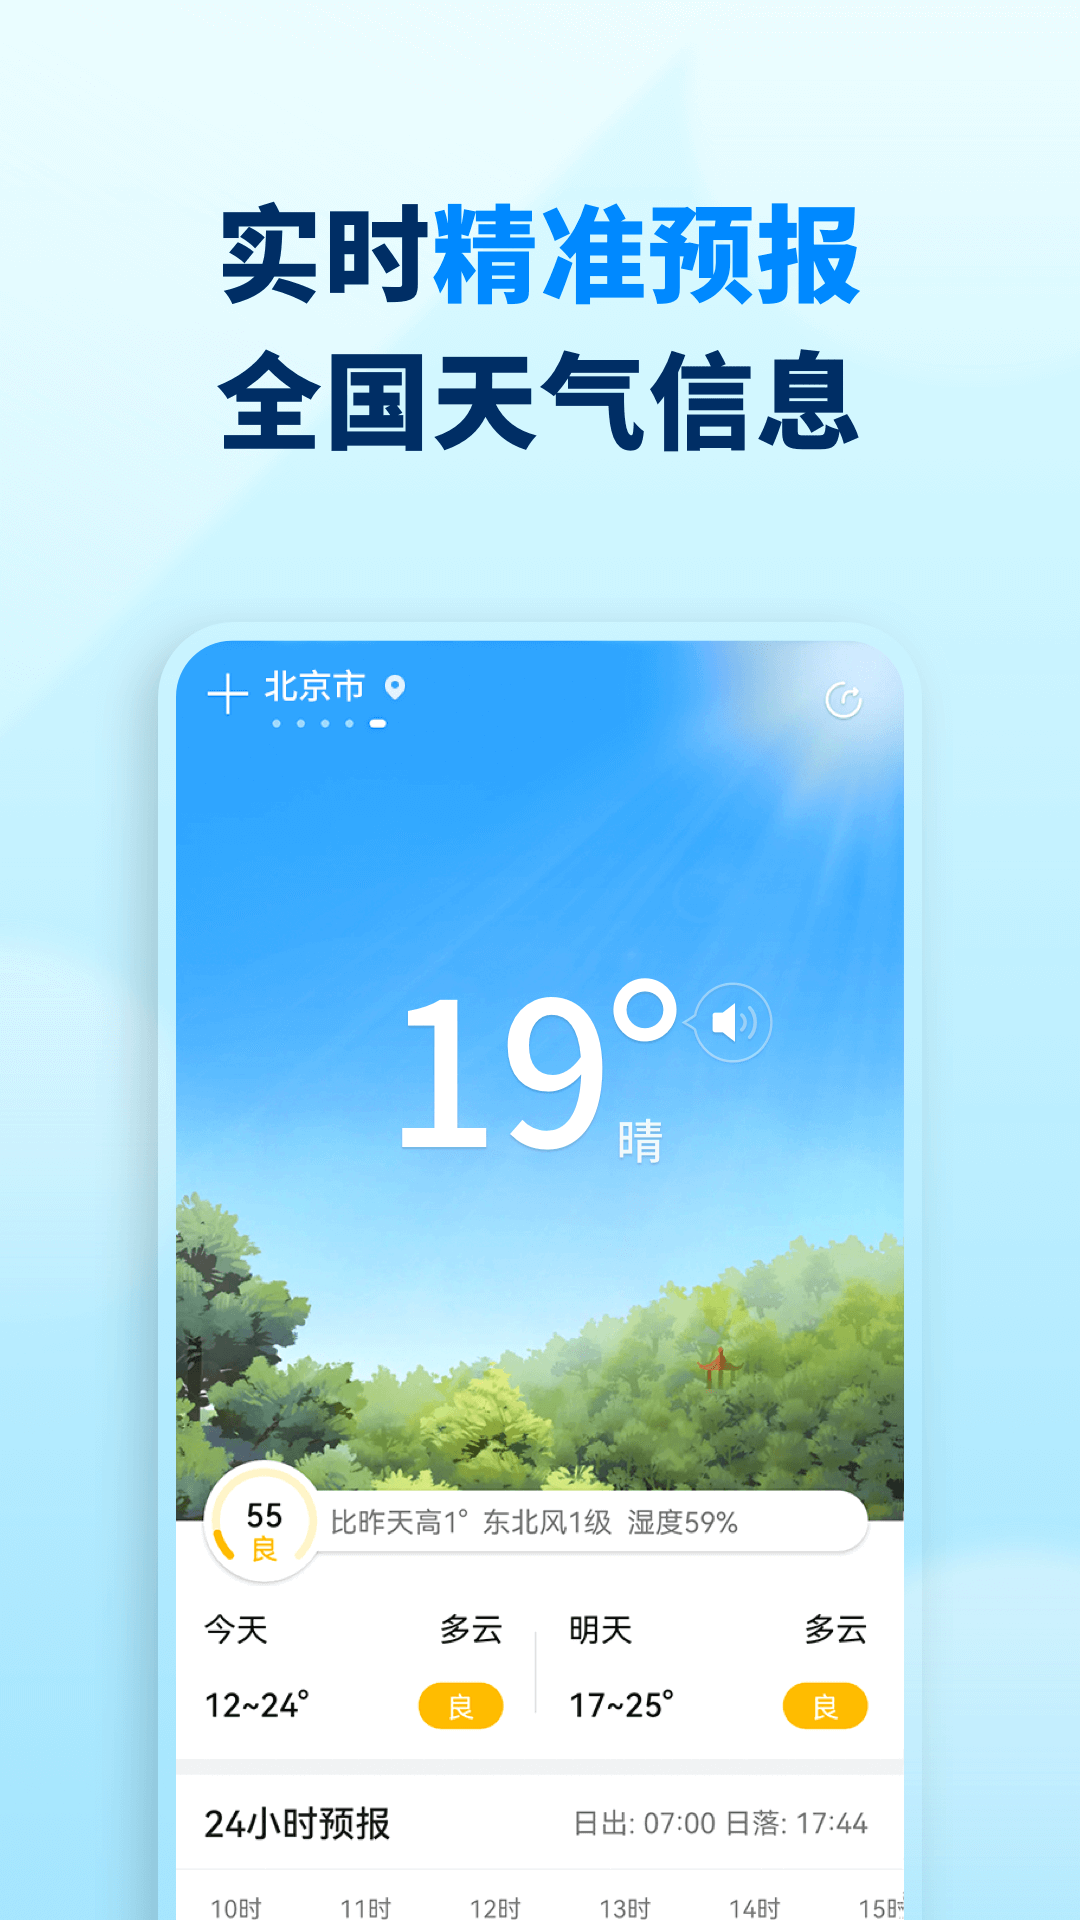 奇妙天气预报7天iOS版预约